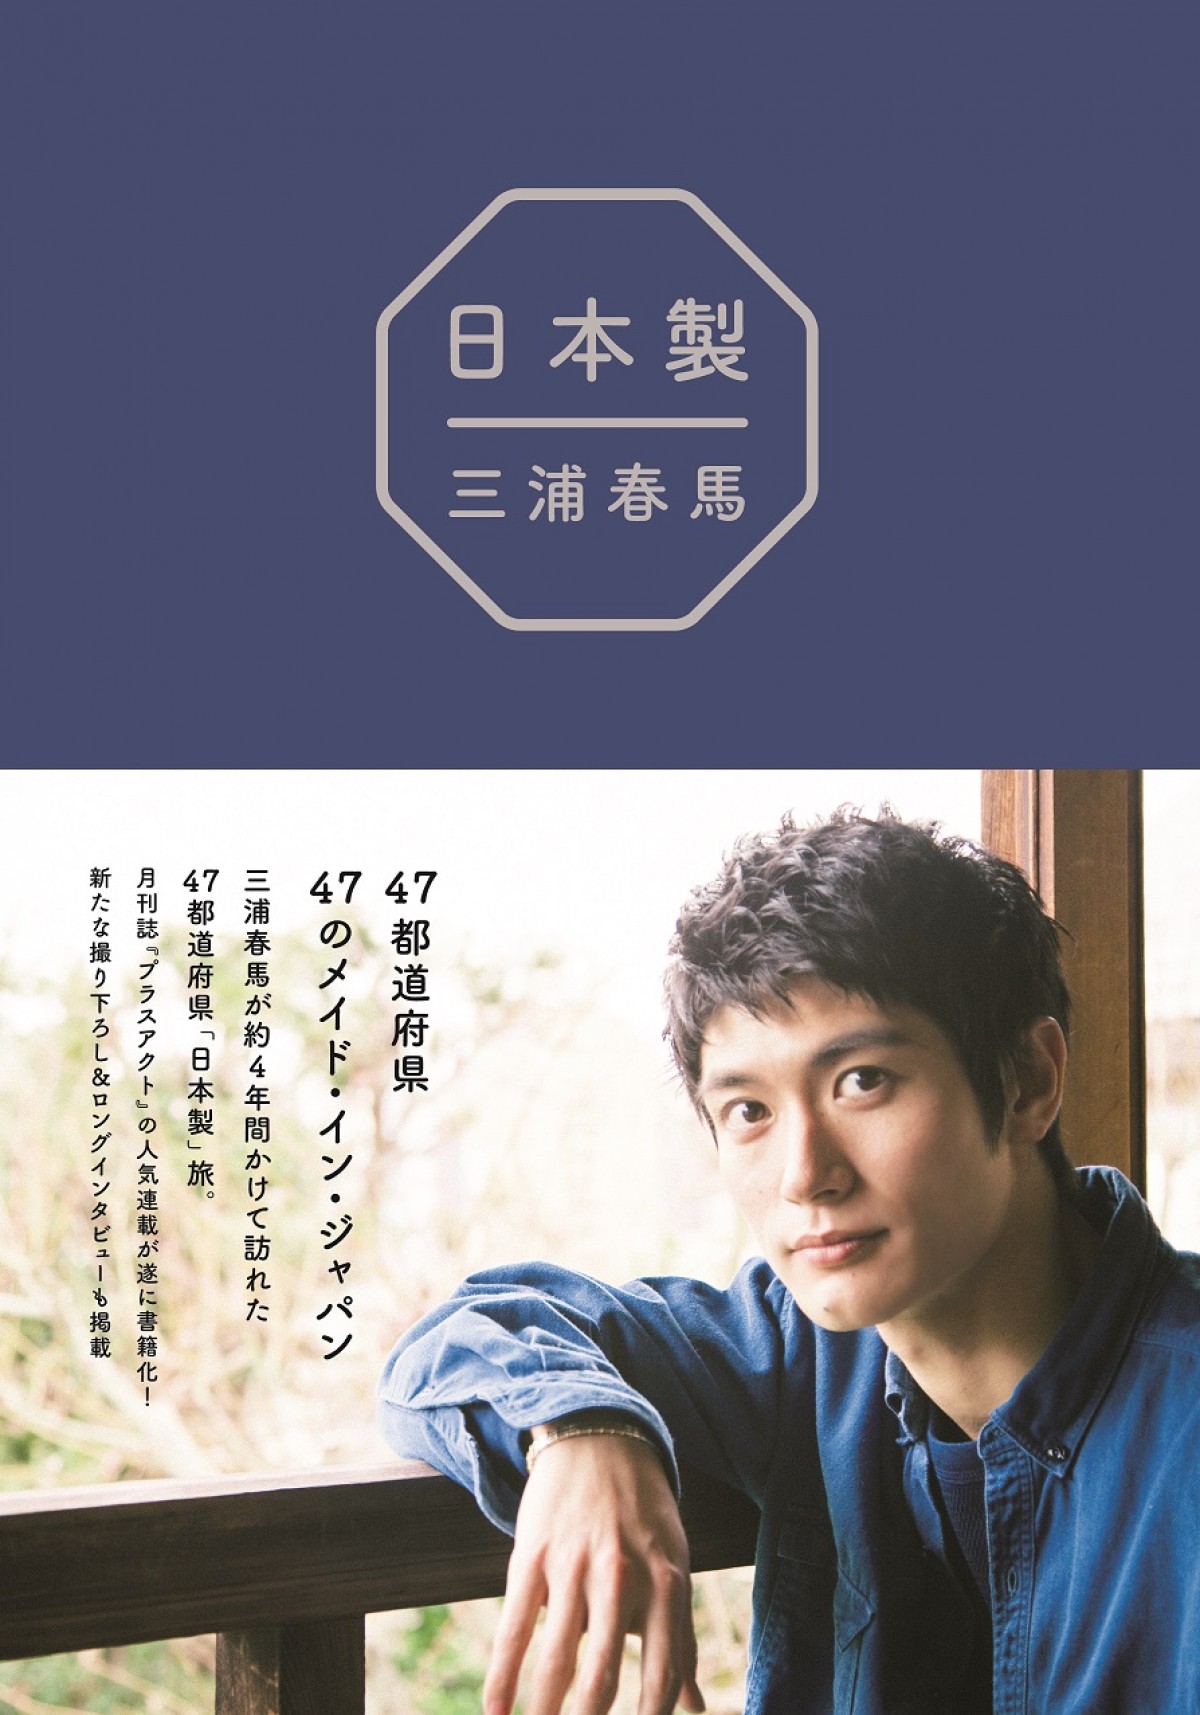 三浦春馬、30歳の誕生日に47都道府県を巡った旅をまとめた書籍発売